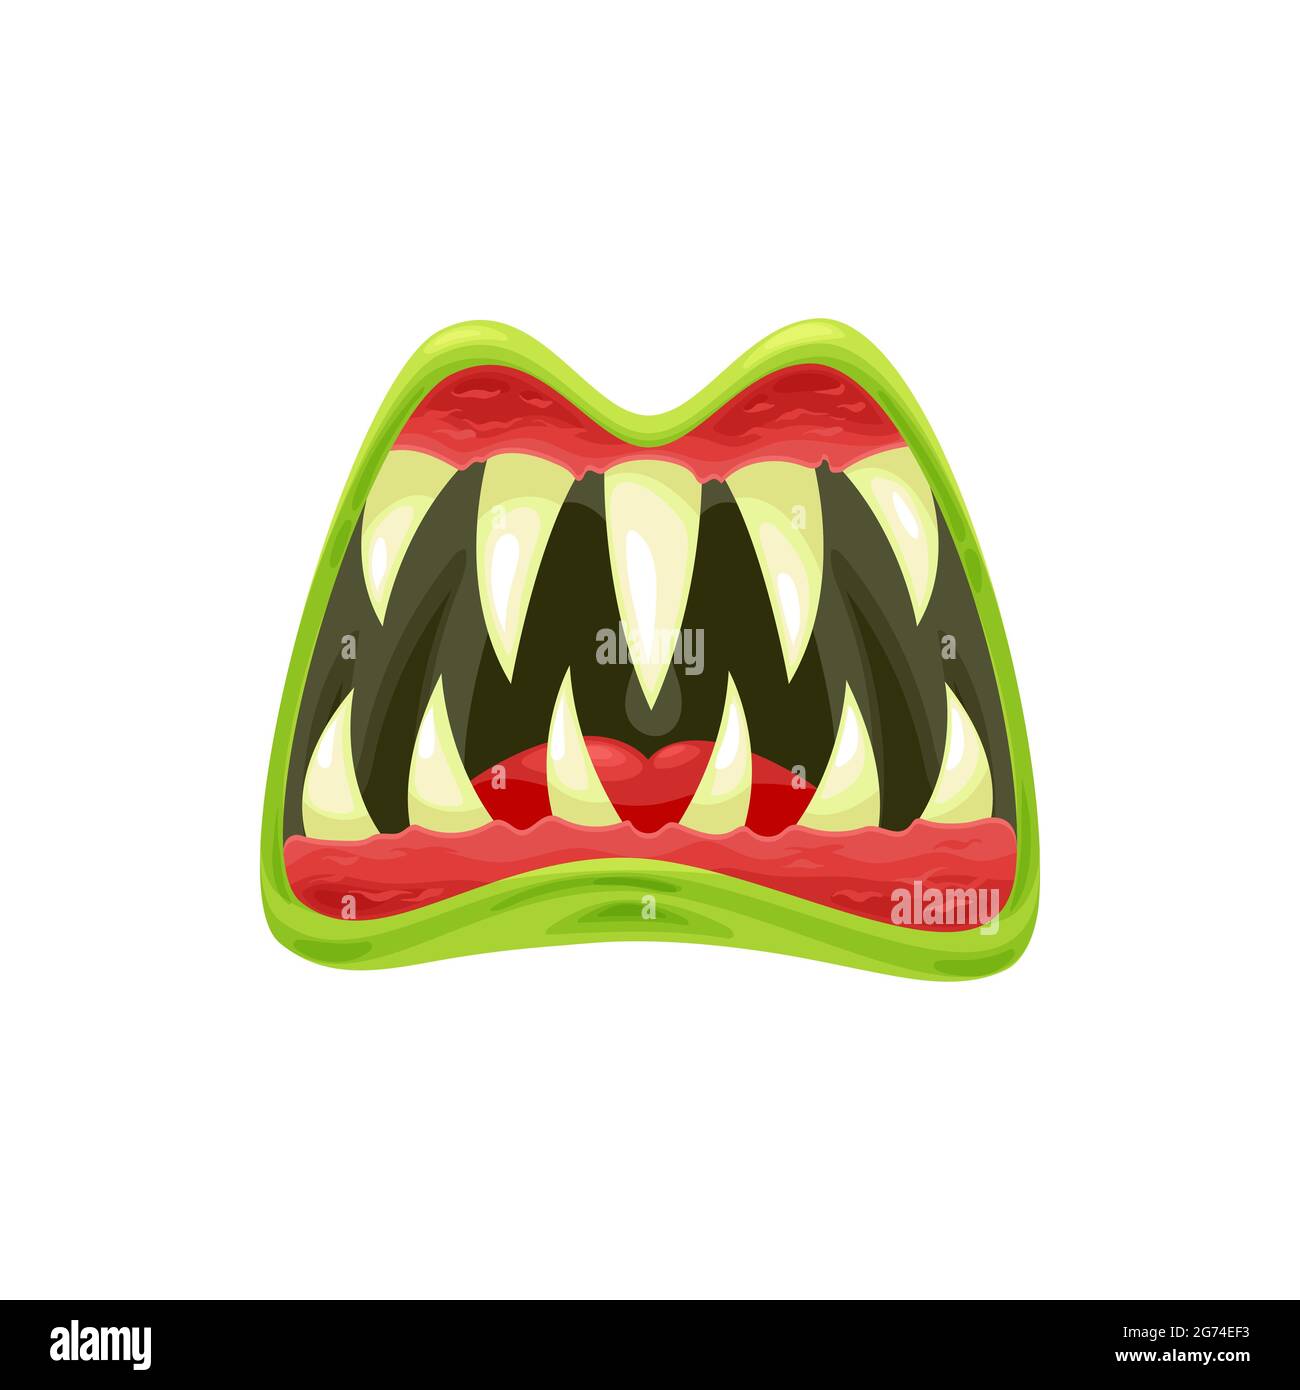 Monster Mund Vektor-Symbol, gruselige Zombie oder Alien Kiefer mit scharfen Zähnen, grünen Lippen und roter Zunge. Halloween Kreatur brüllenden Mund isoliert auf weiß Stock Vektor